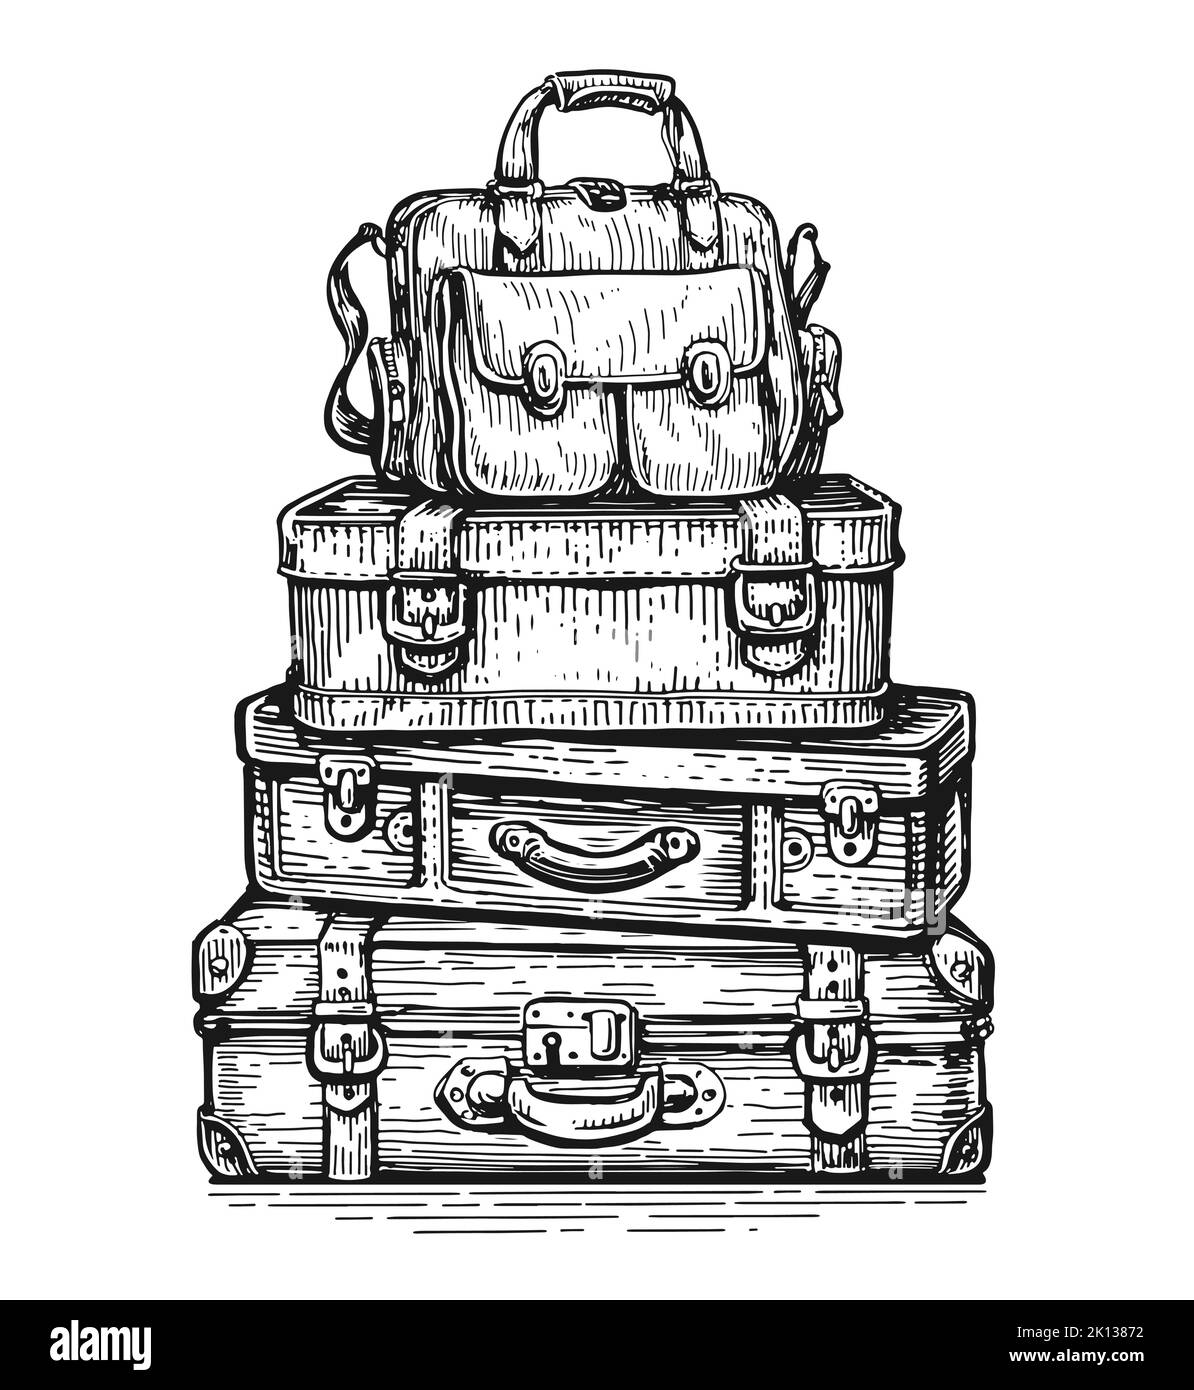 Le valigie di viaggio e viaggio si raccolgono isolate. Pila di bagagli da viaggio impilati. Illustrazione vettoriale di schizzo delle valigie Illustrazione Vettoriale